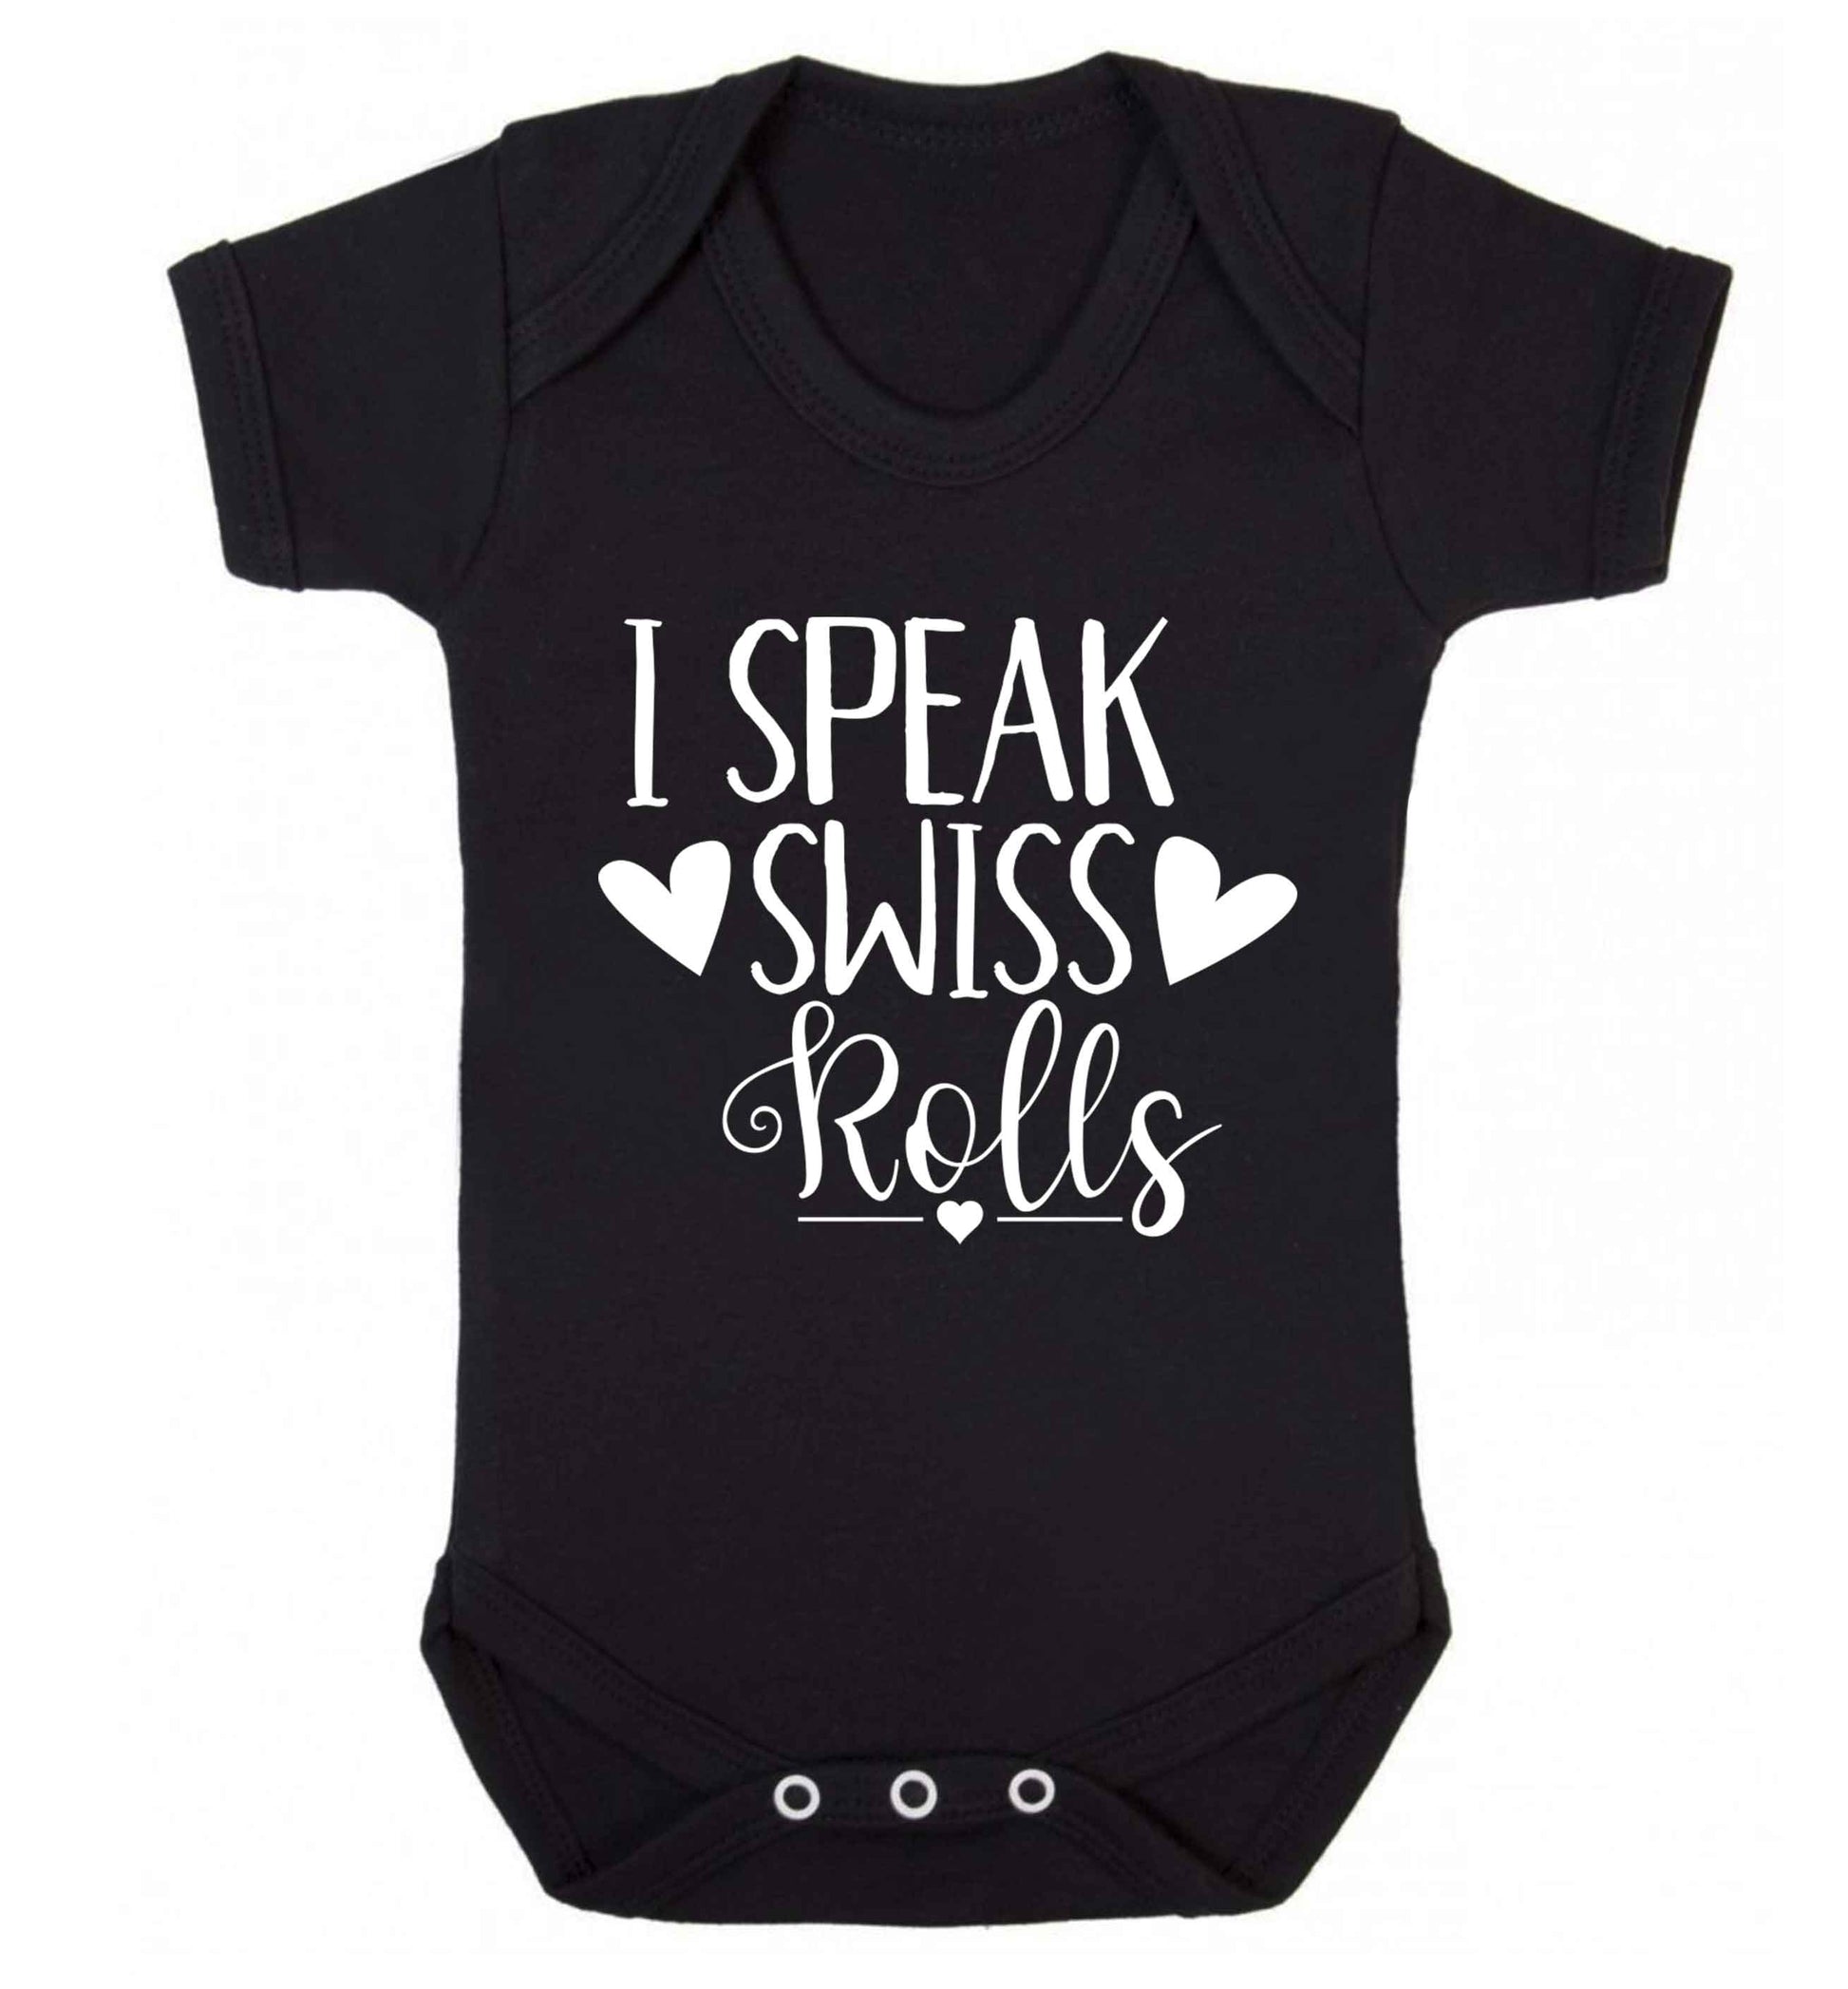 I speak swiss..rolls Baby Vest black 18-24 months